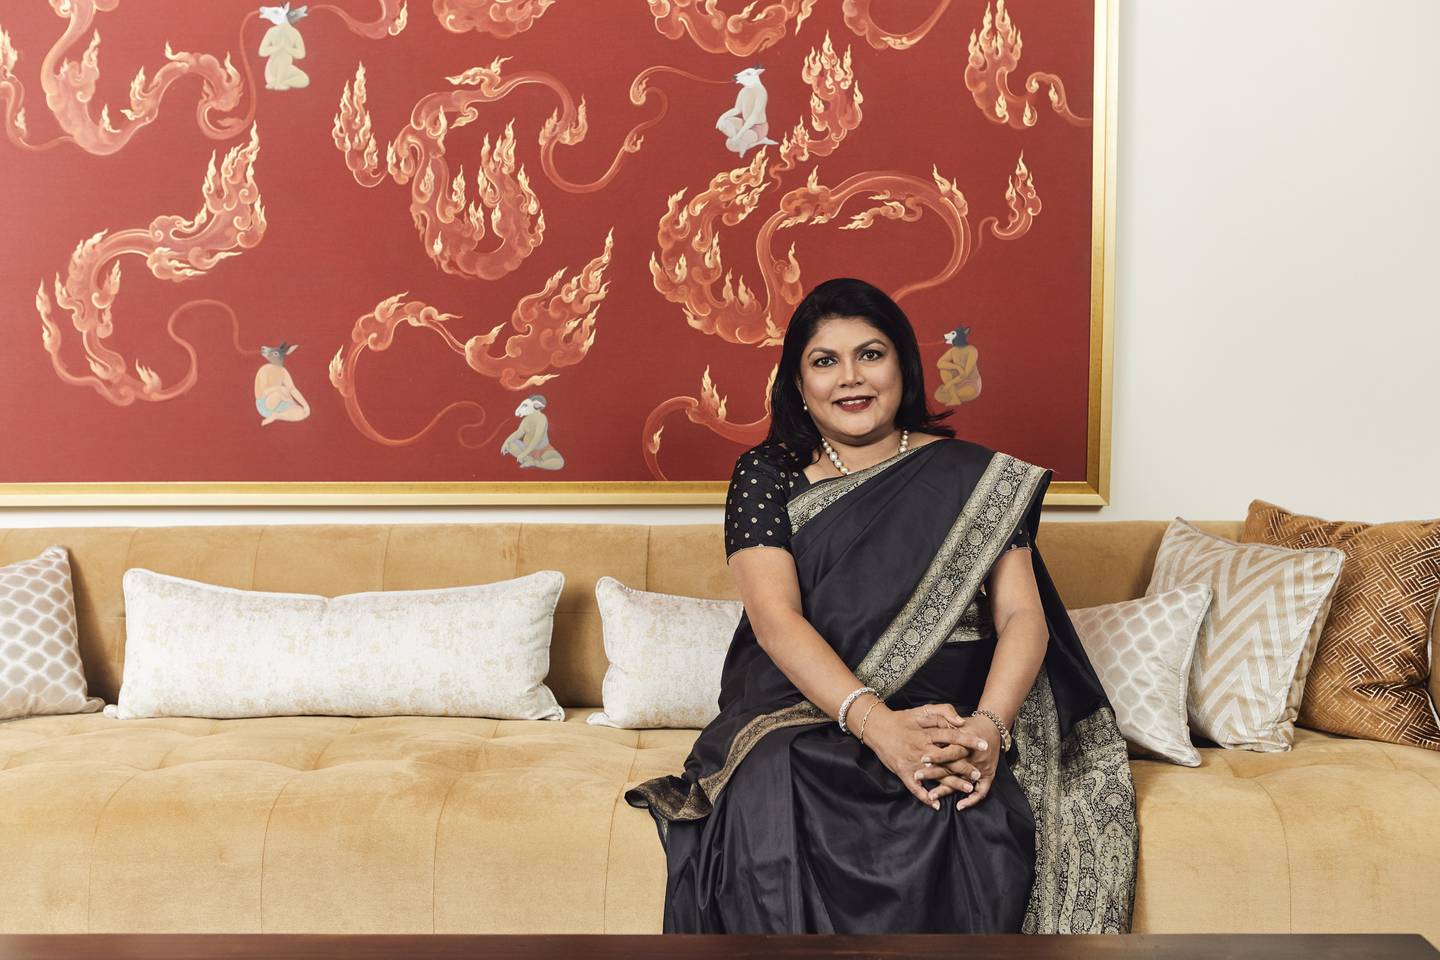 Empresária acumula patrimônio de quase US$ 7 bilhões, a maior fortuna entre mulheres que se tornaram bilionárias por esforço próprio na Índia, segundo o Índice de Bilionários da Bloomberg